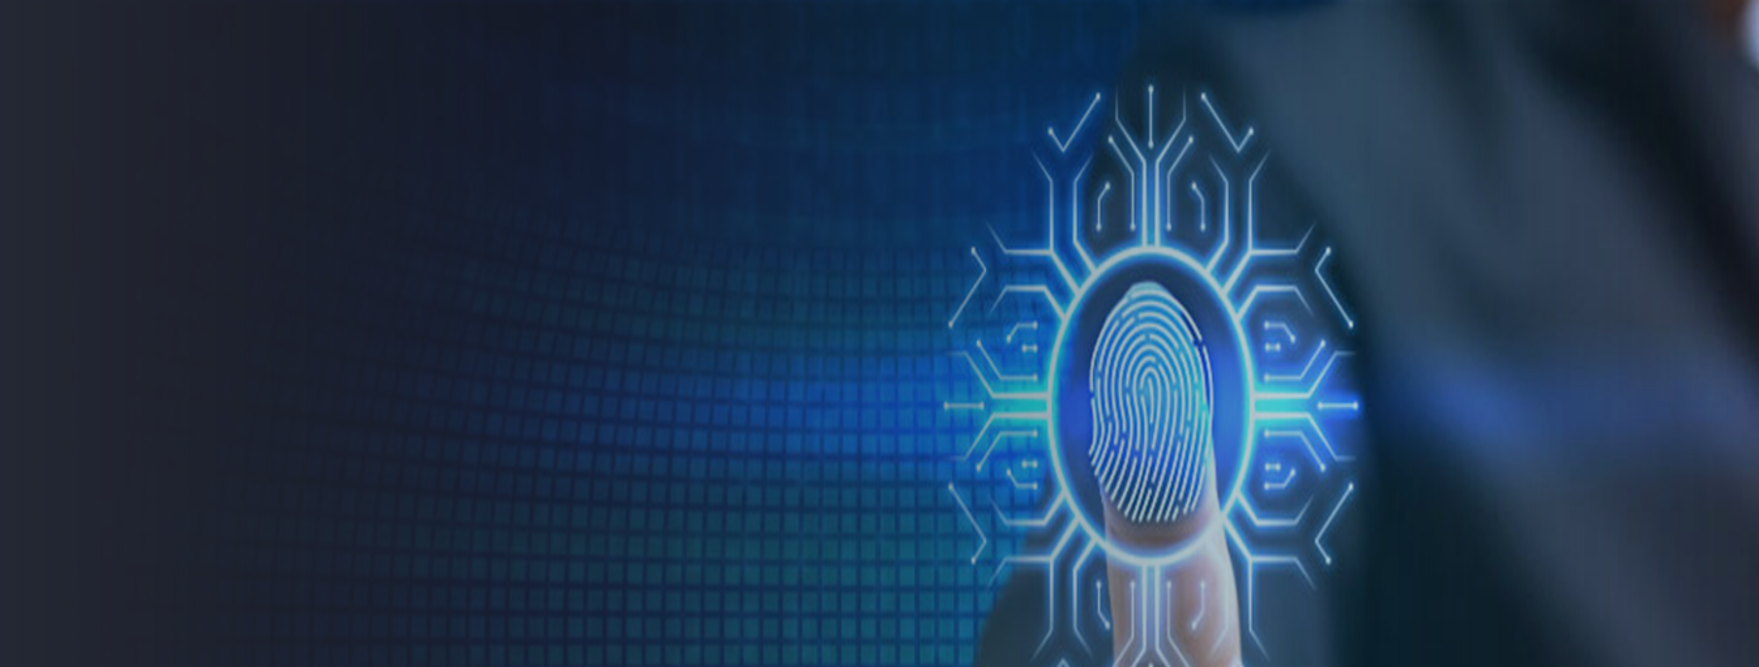 Biometrics Data Management